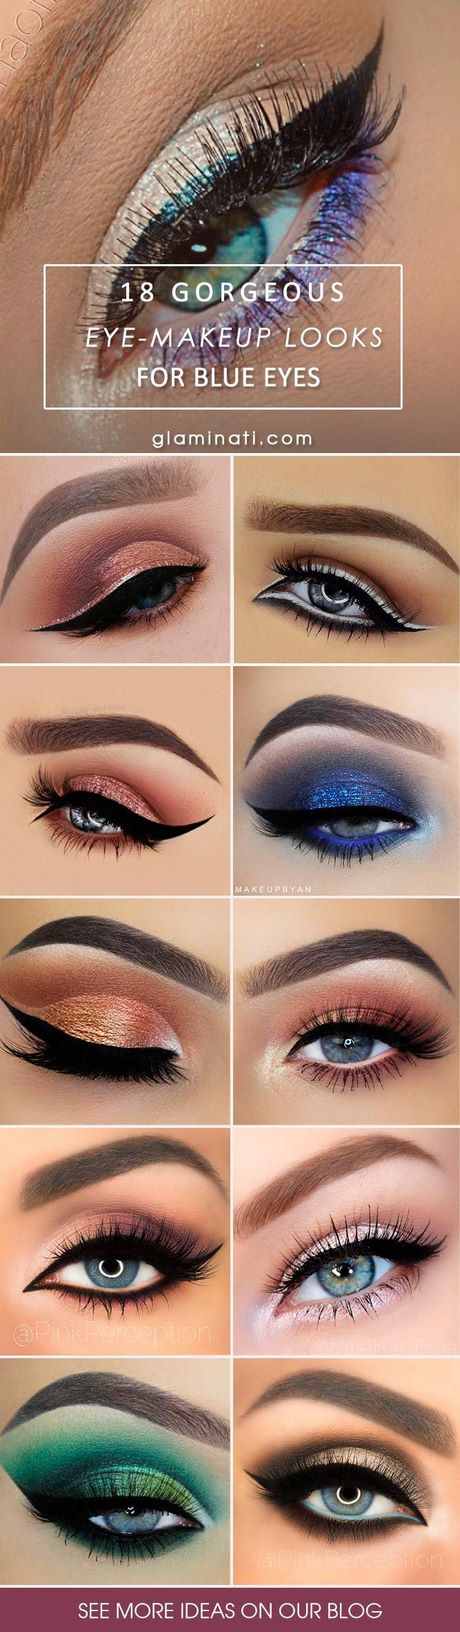 eye-makeup-tips-for-blue-eyes-55_3 Oog make-up tips voor blauwe ogen